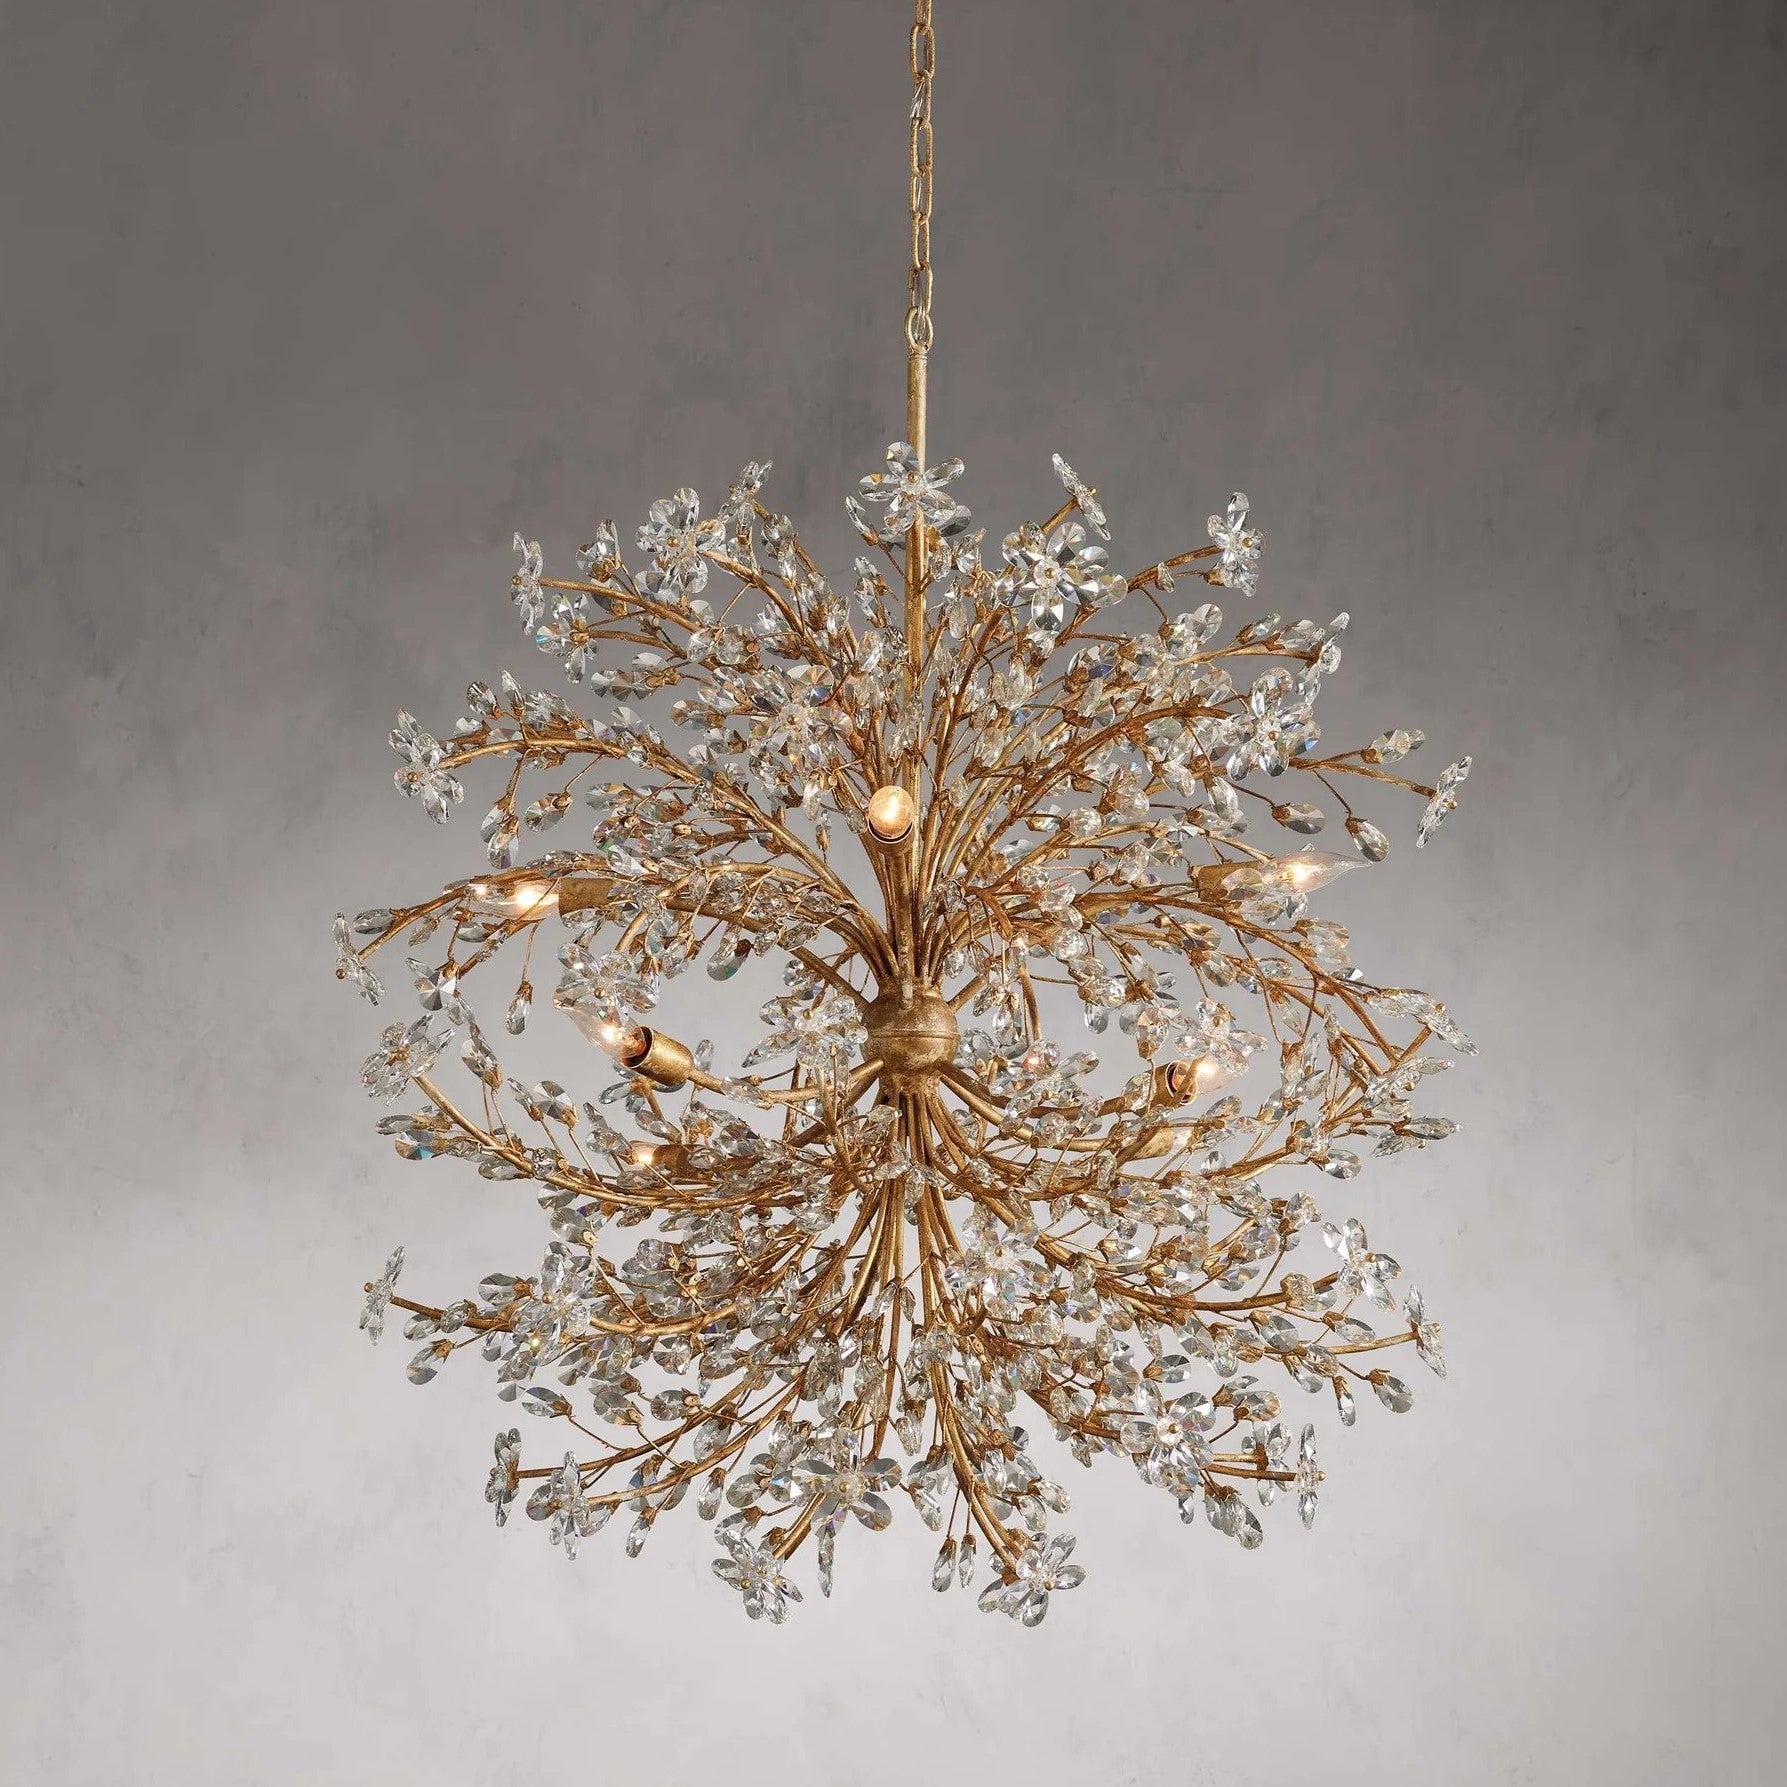 Art Design Crystal Florals Chandelier for Living Room/Bedroom/Dining Room/Kitchen island Chandeliers Kevinstudiolives   